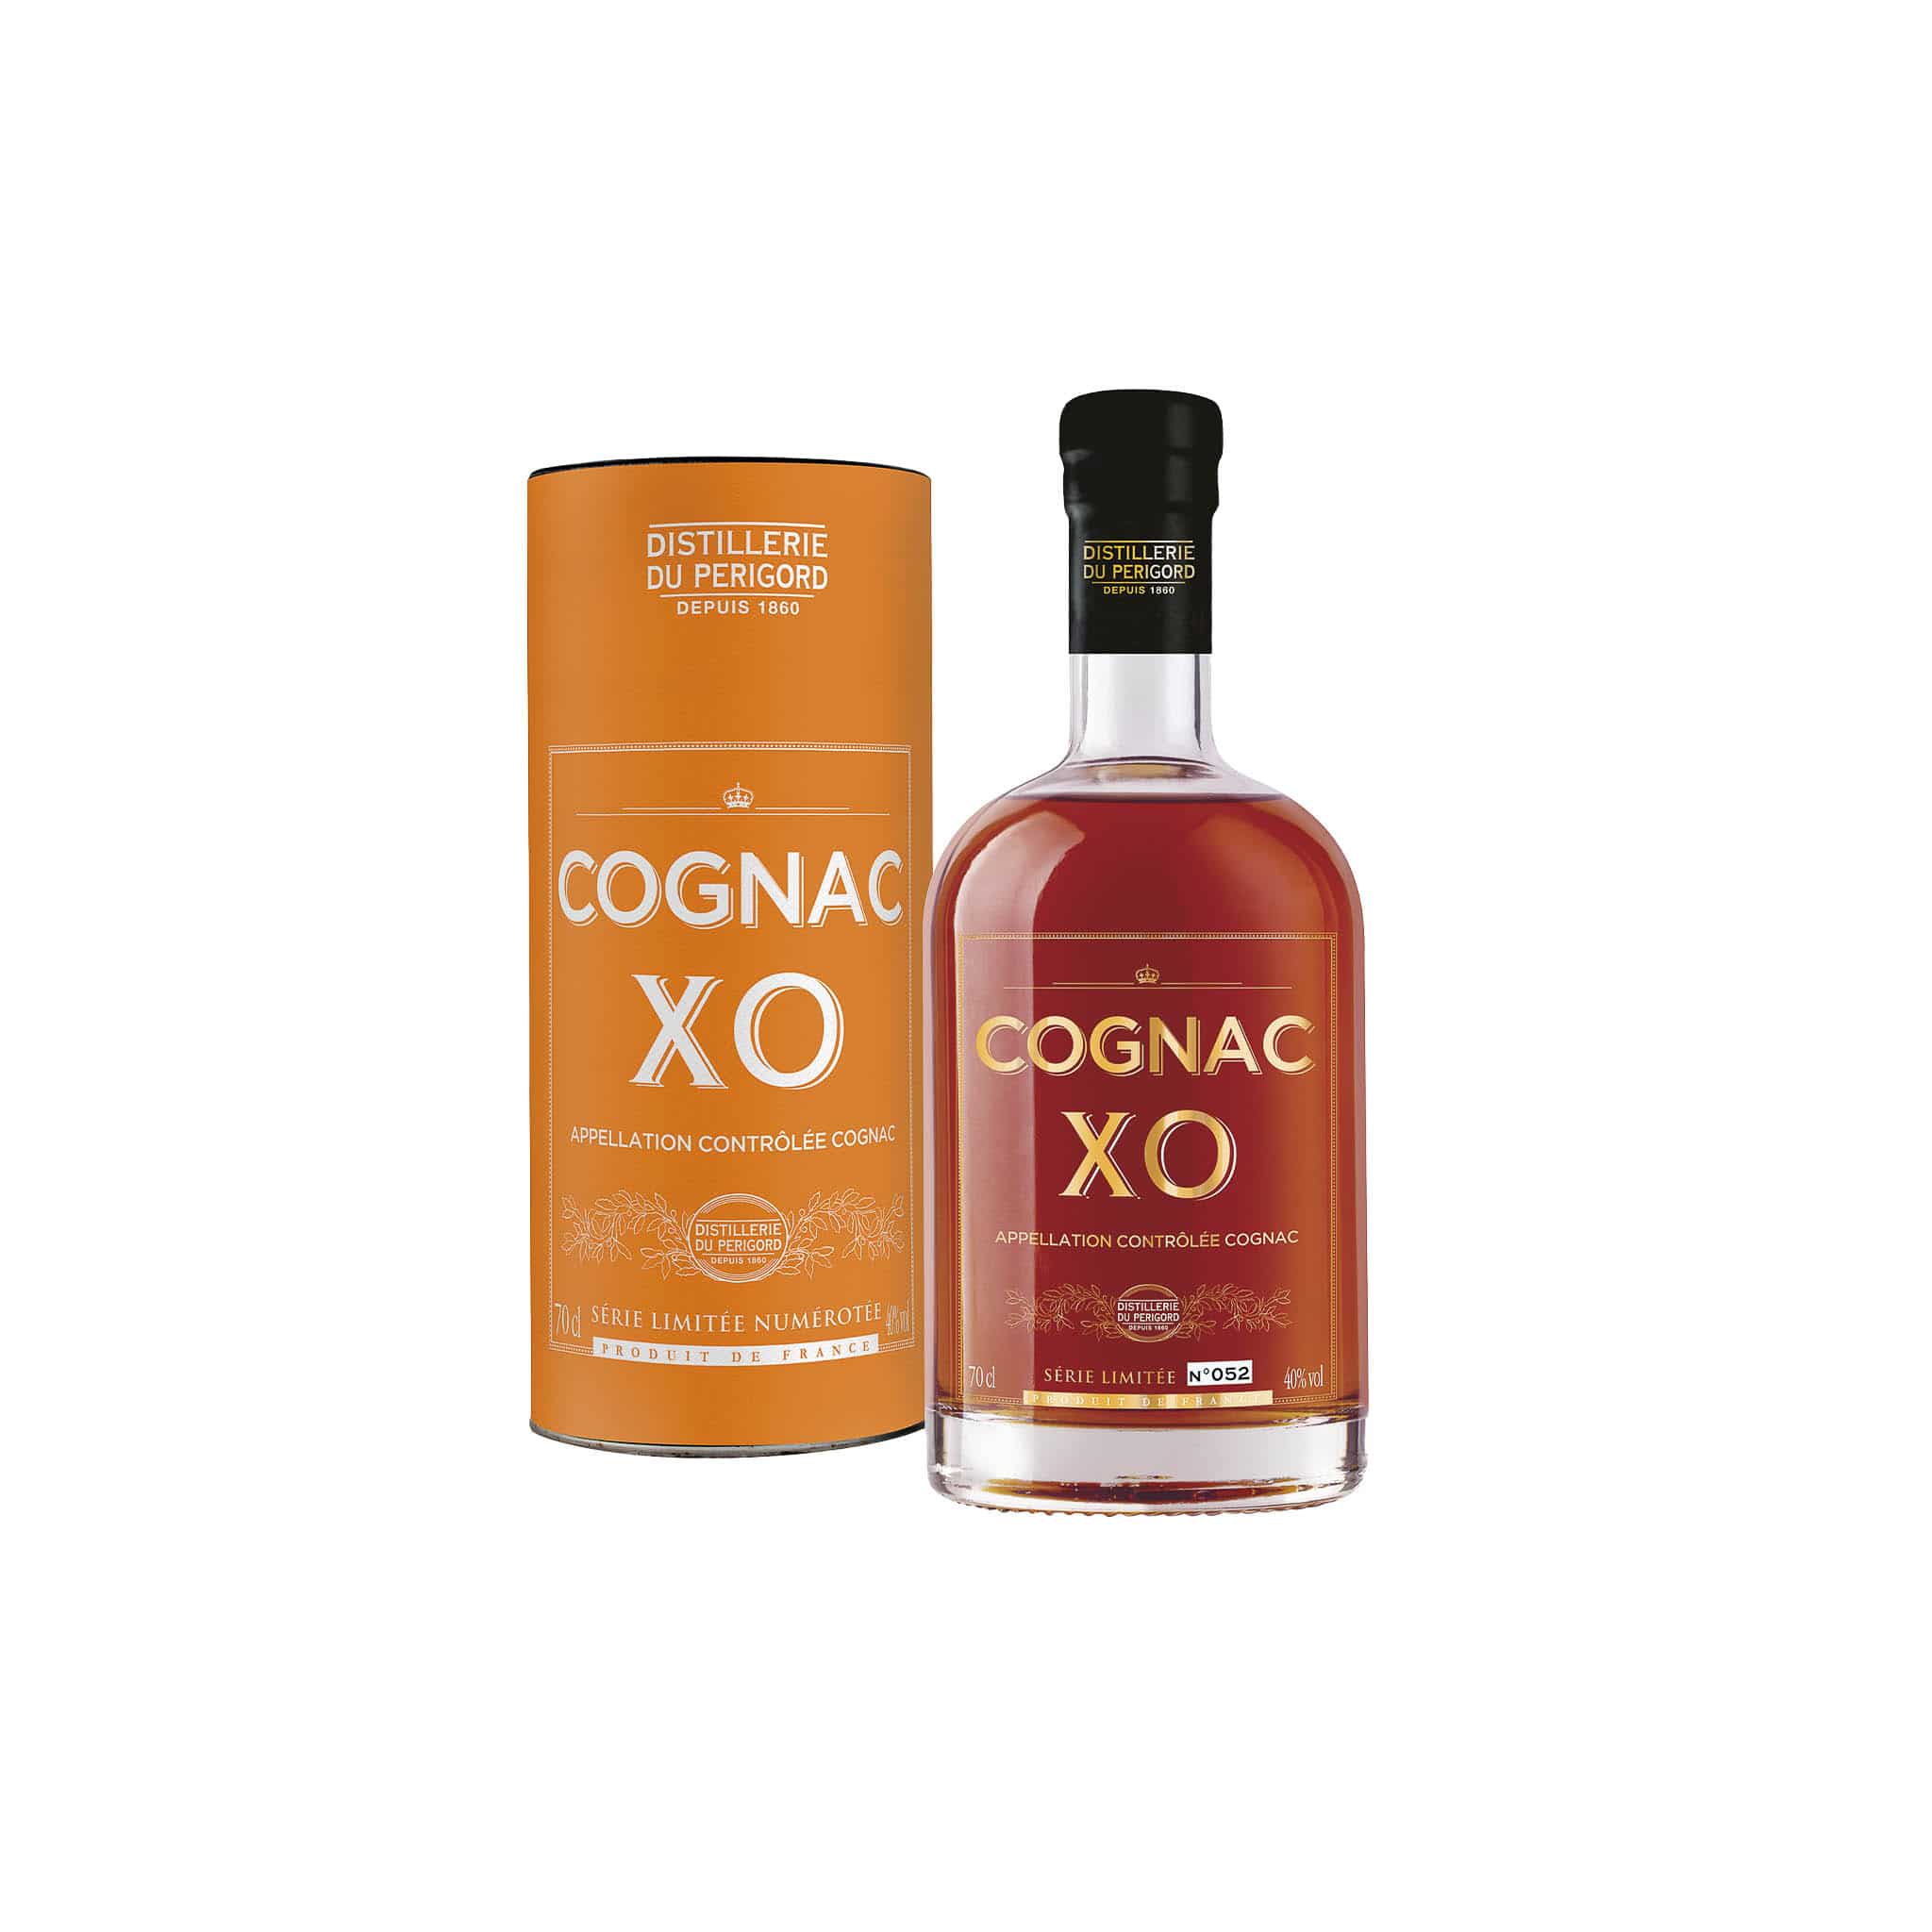 Distillerie du Perigord Cognac XO, 700ml